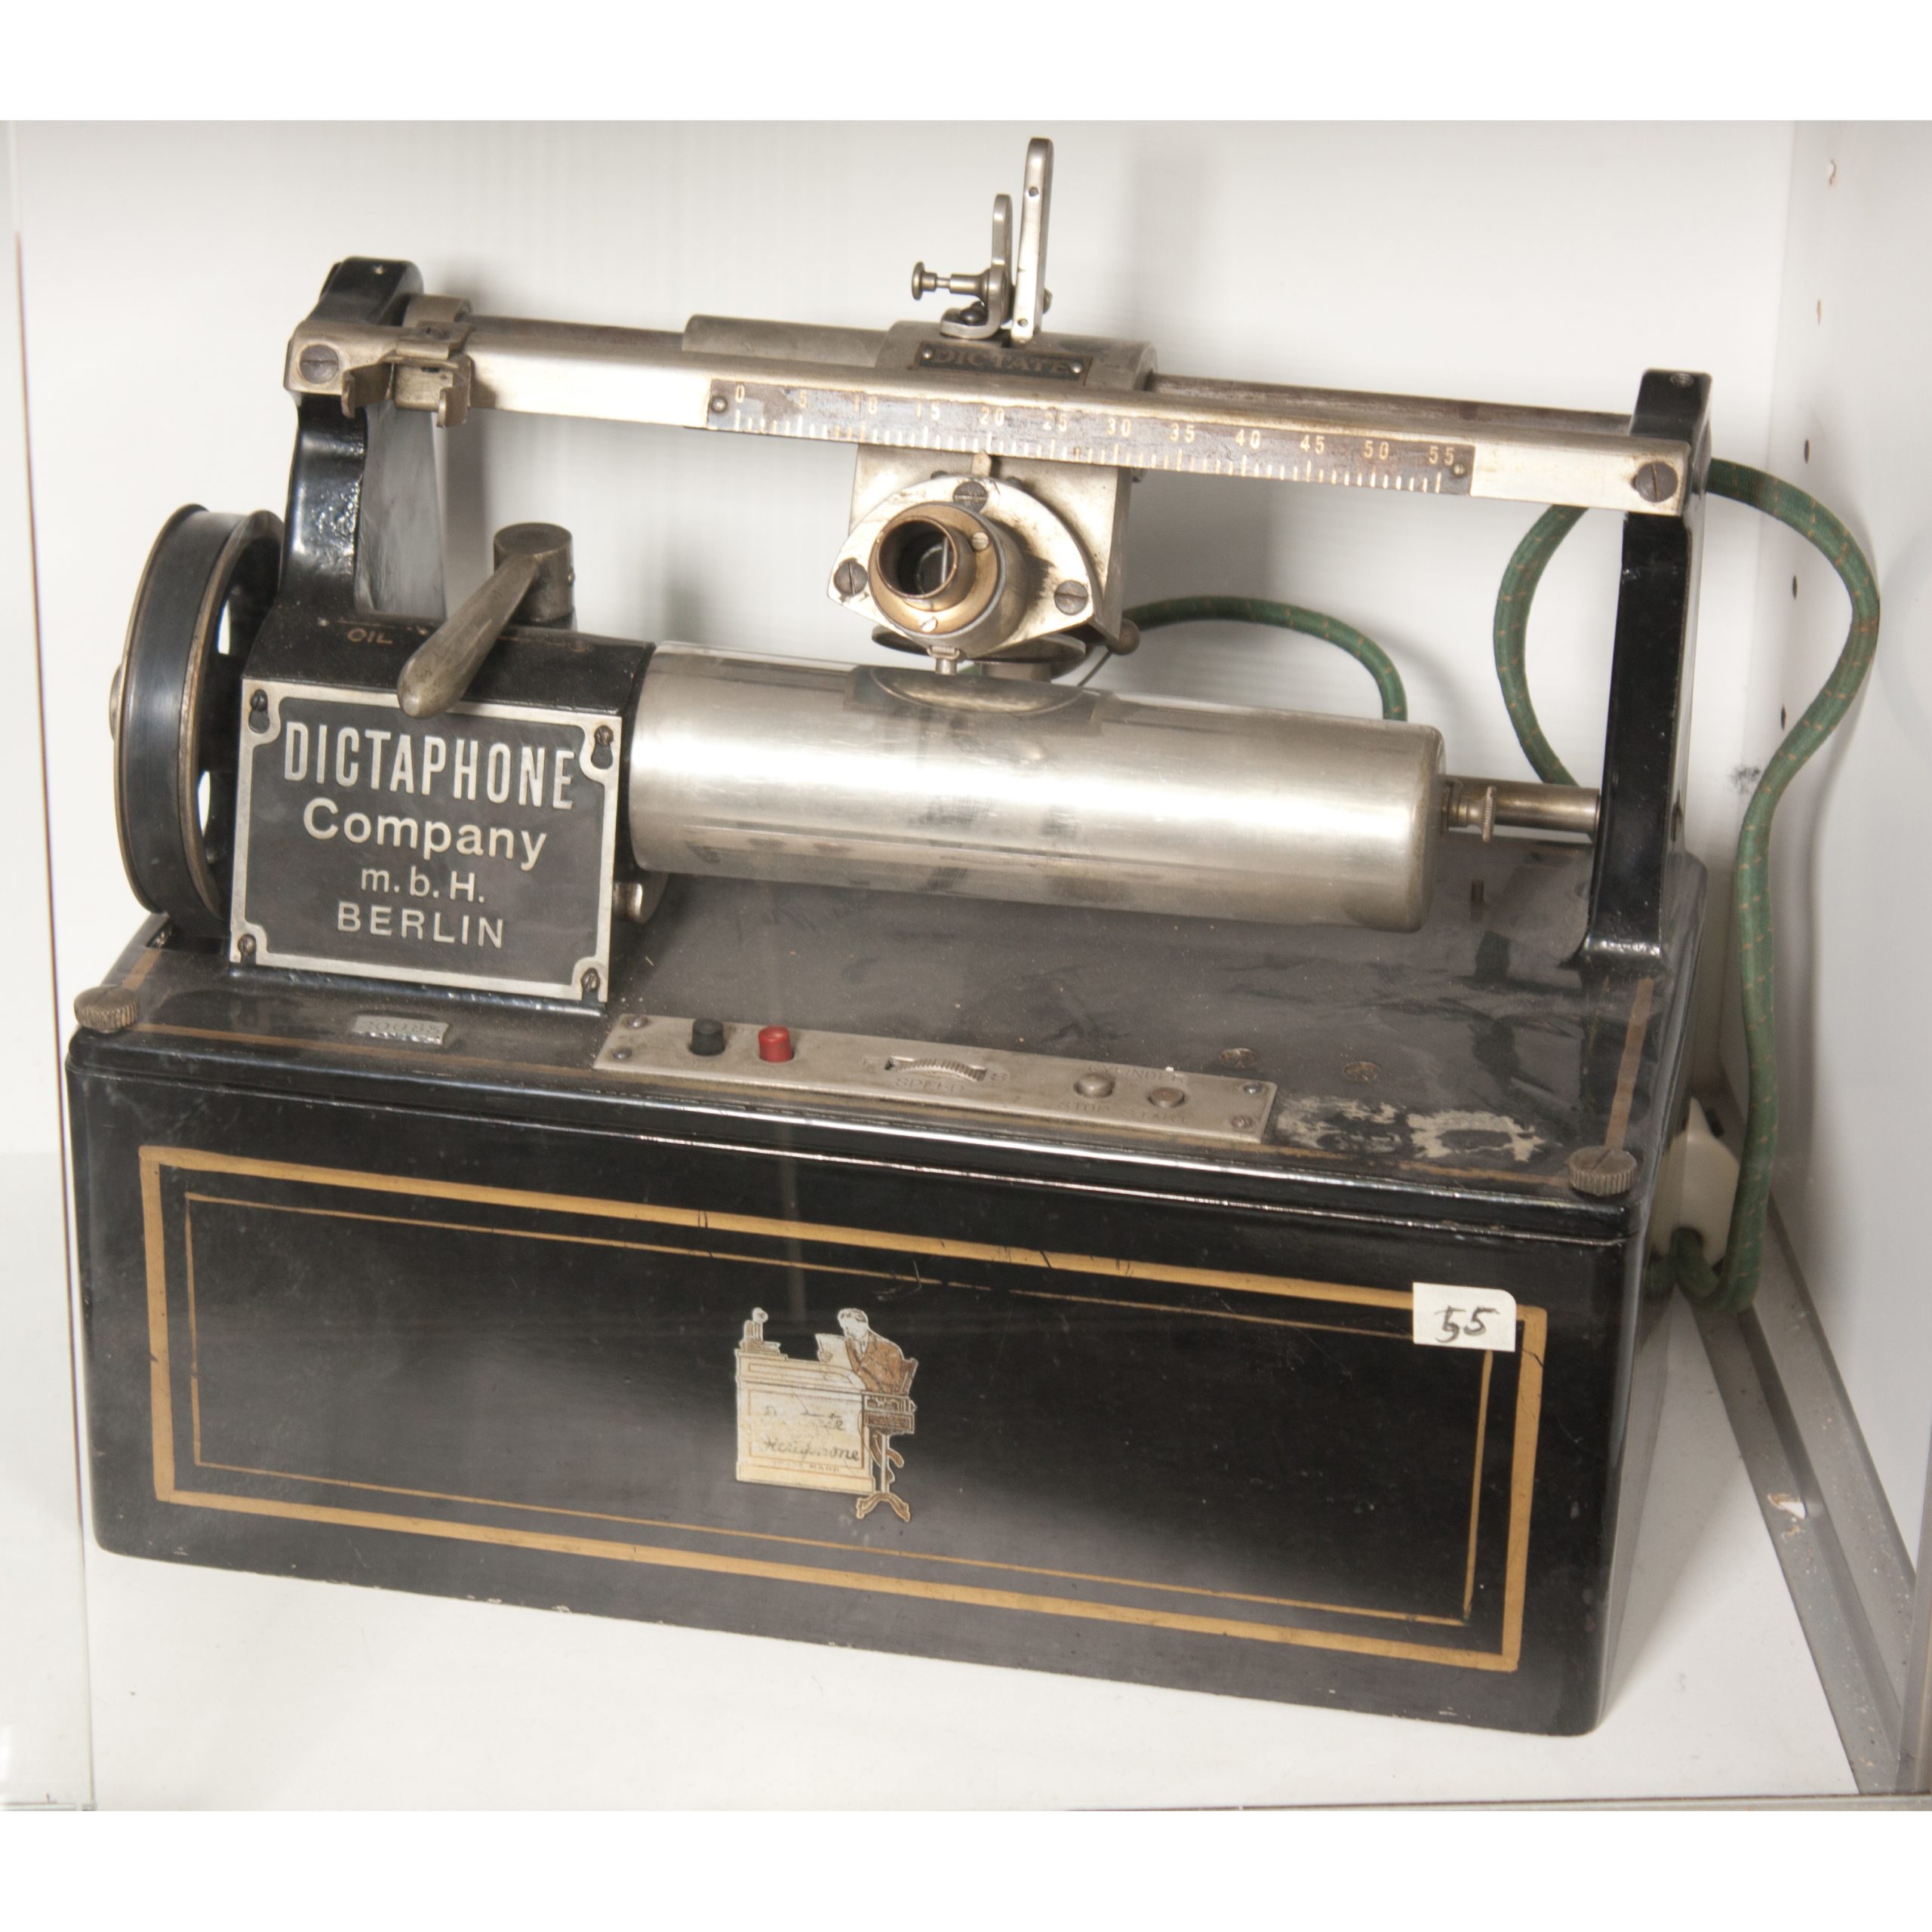 Dictaphone dictation machine